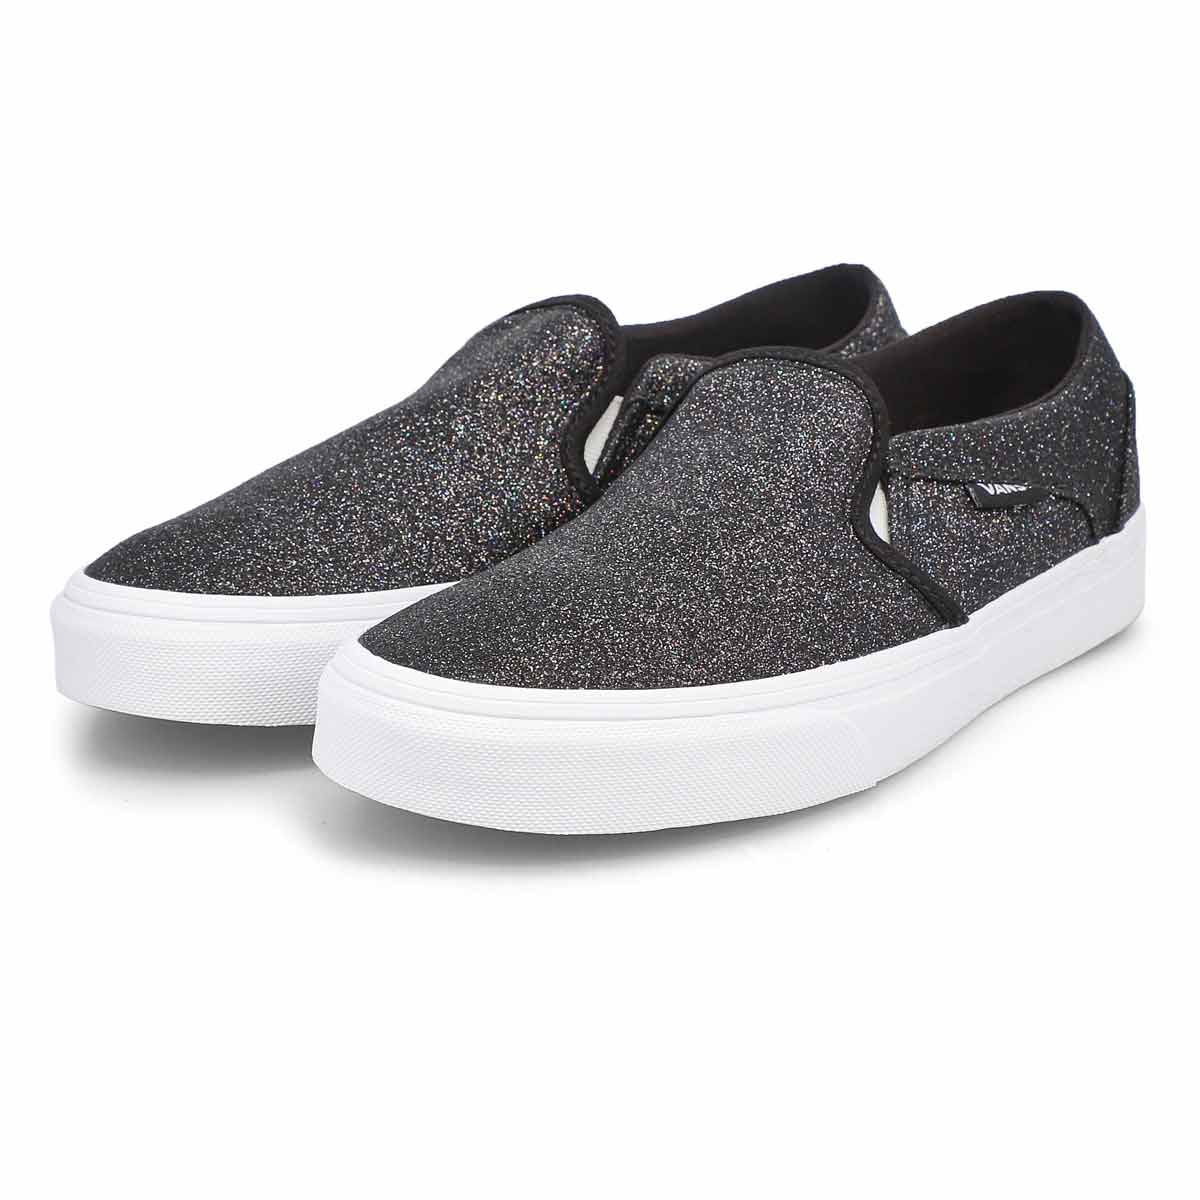 Vans Women's Asher Sneaker - Glitter Black | SoftMoc.com